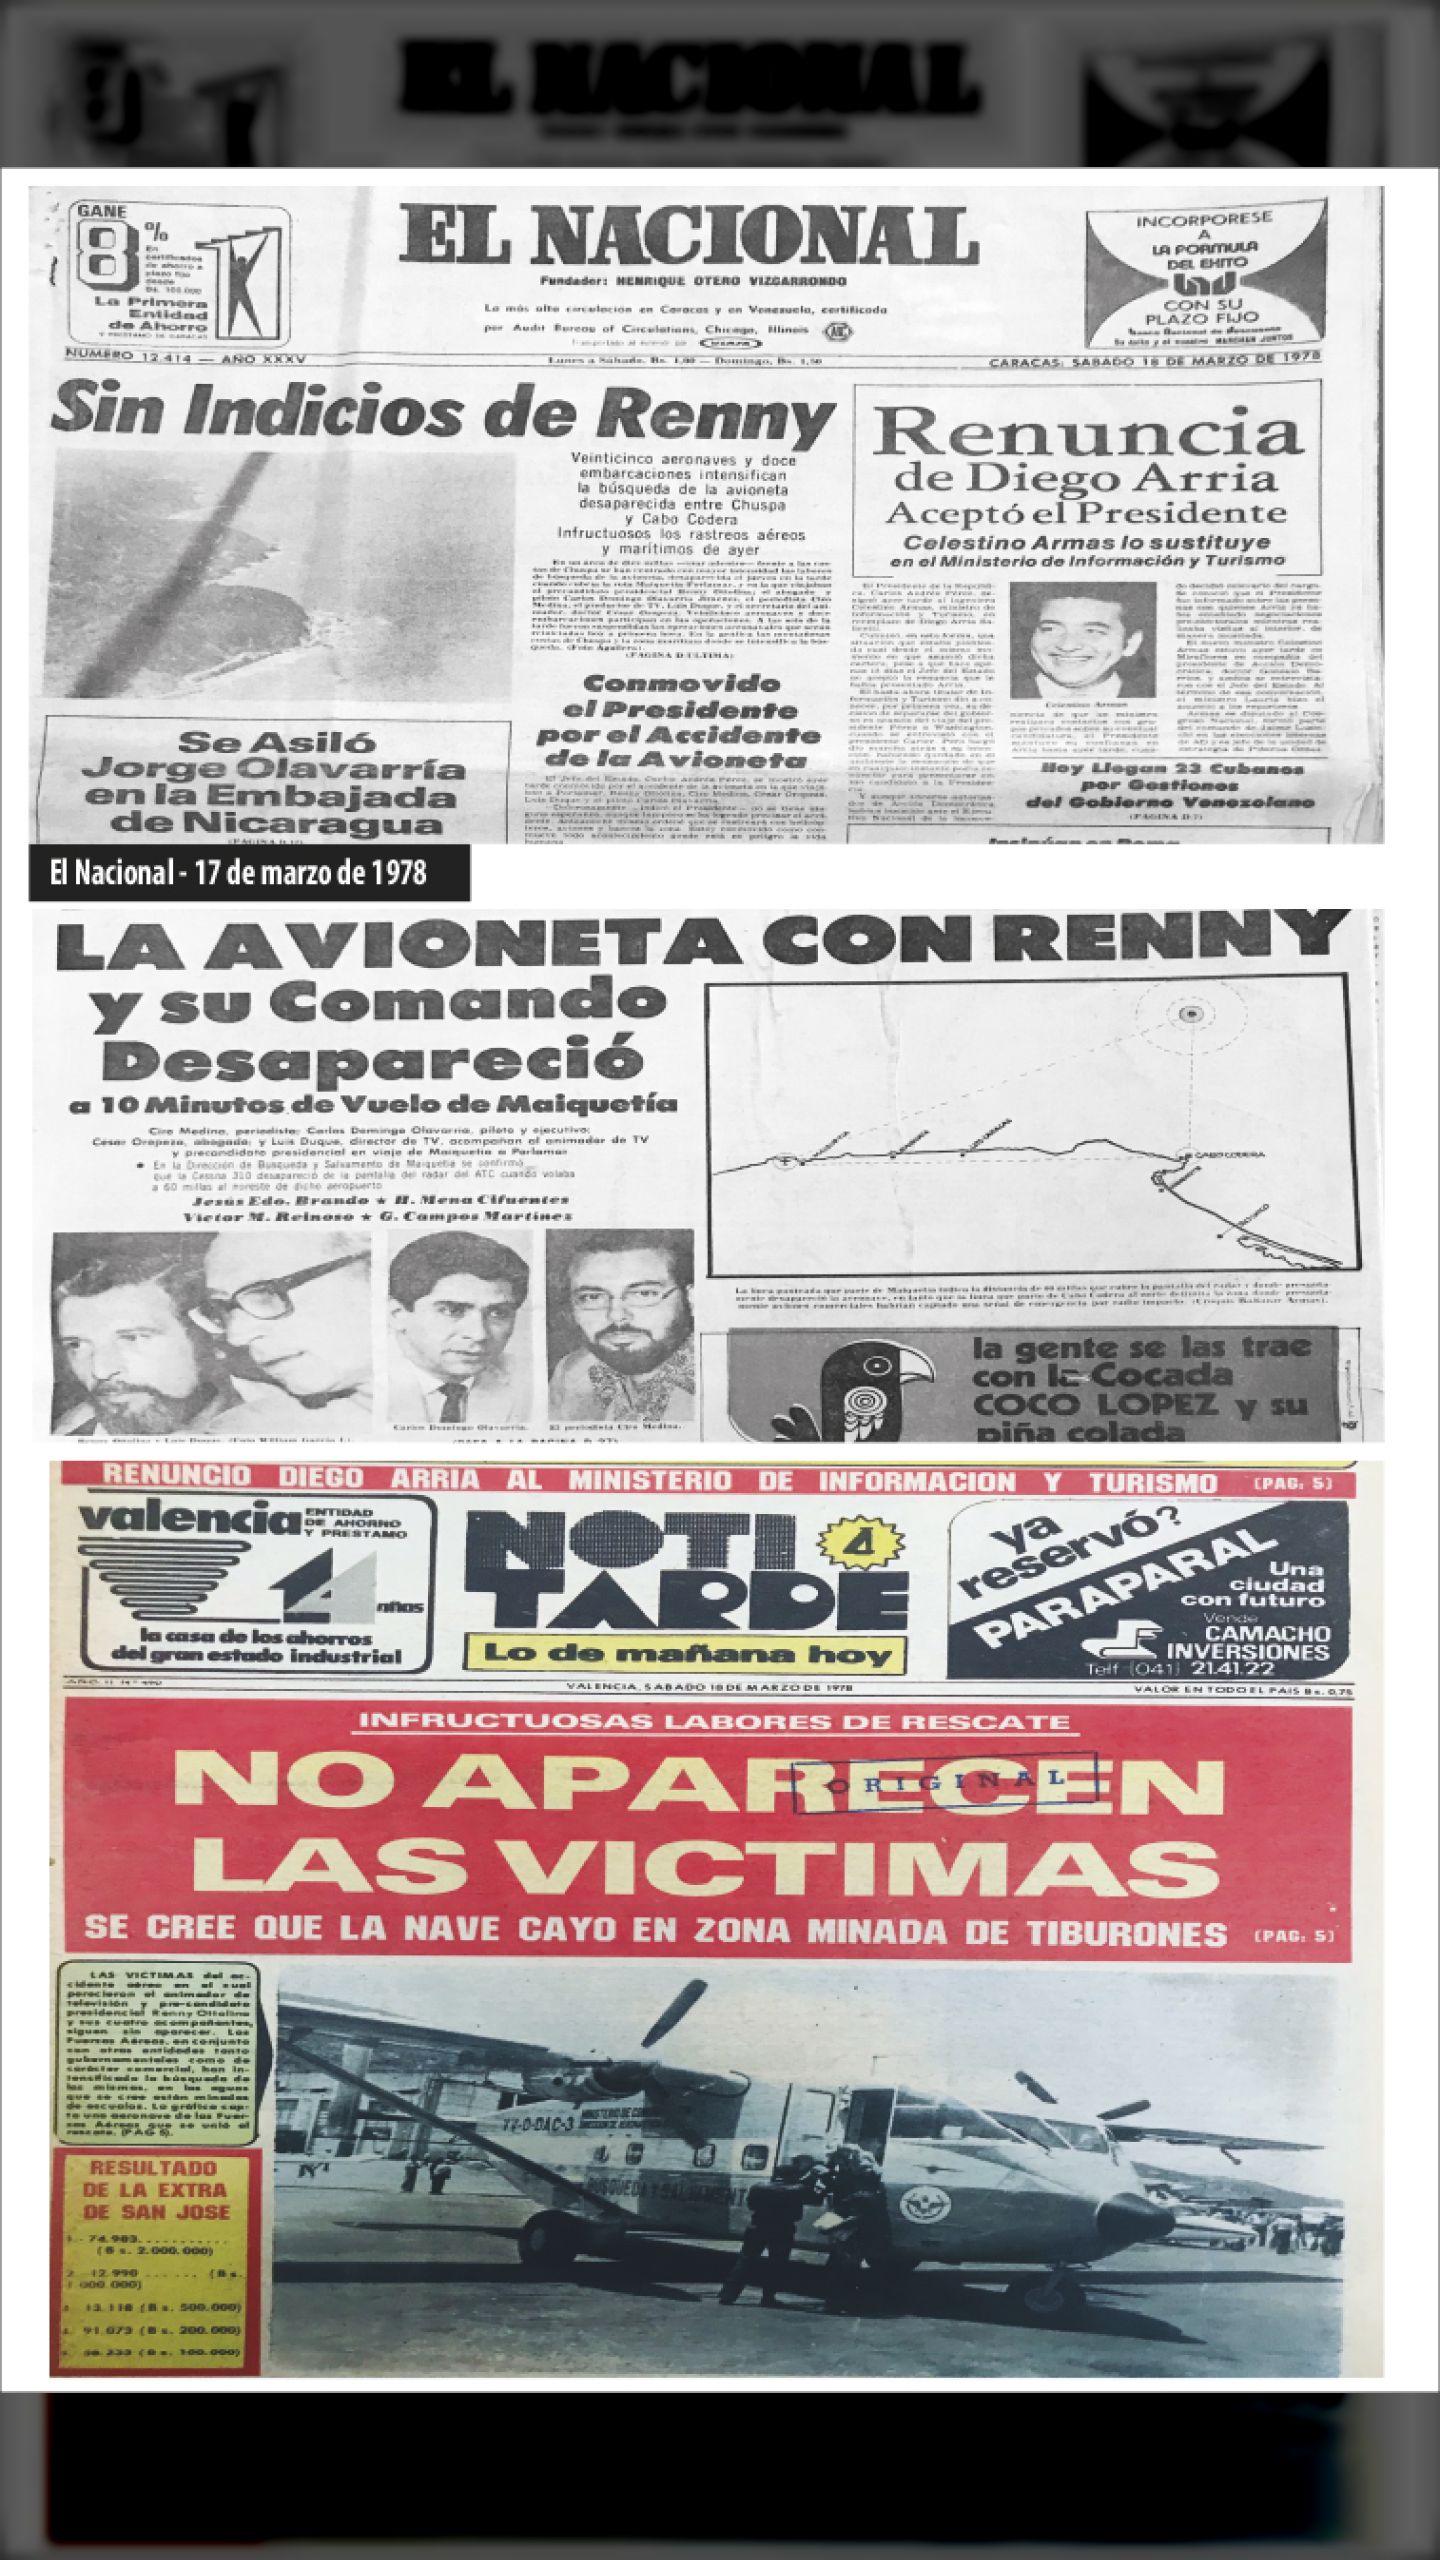 SIN INDICIOS DE RENNY (El Nacional, 18 de marzo de 1978)